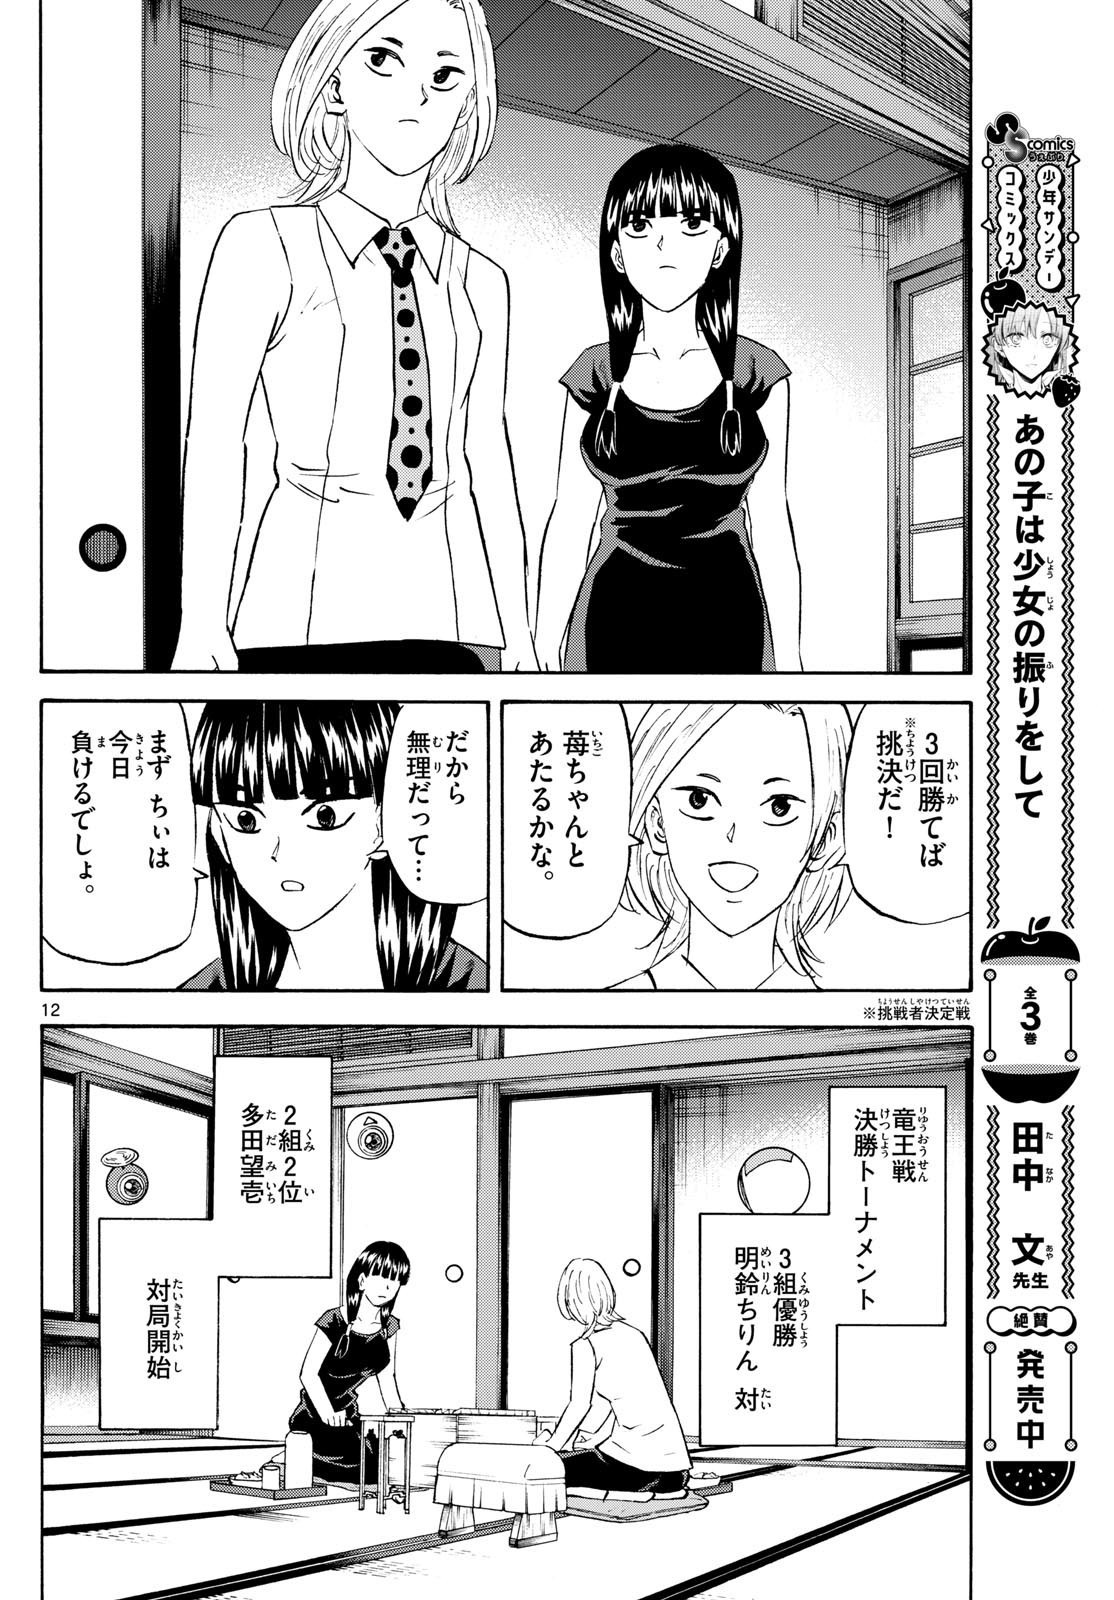 Ryu-to-Ichigo - Chapter 199 - Page 12